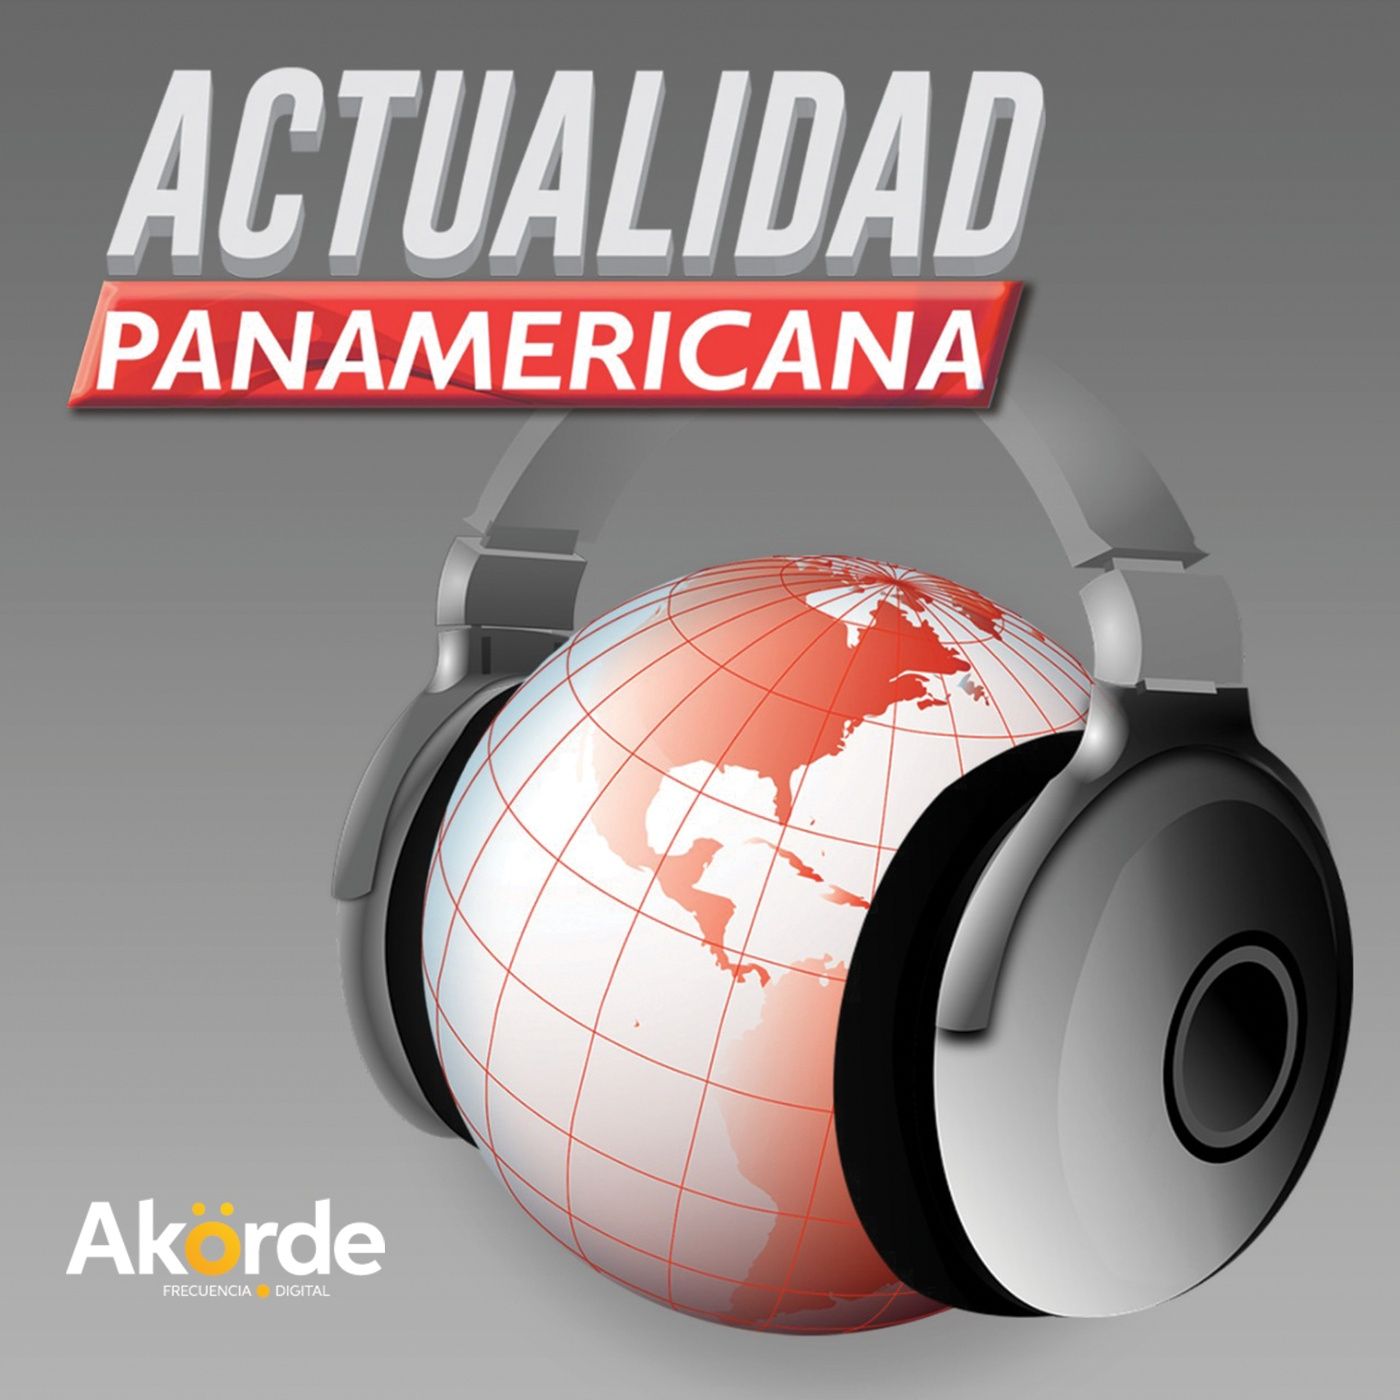 Podcast de Actualidad Panamericana: hablar (de) mierda